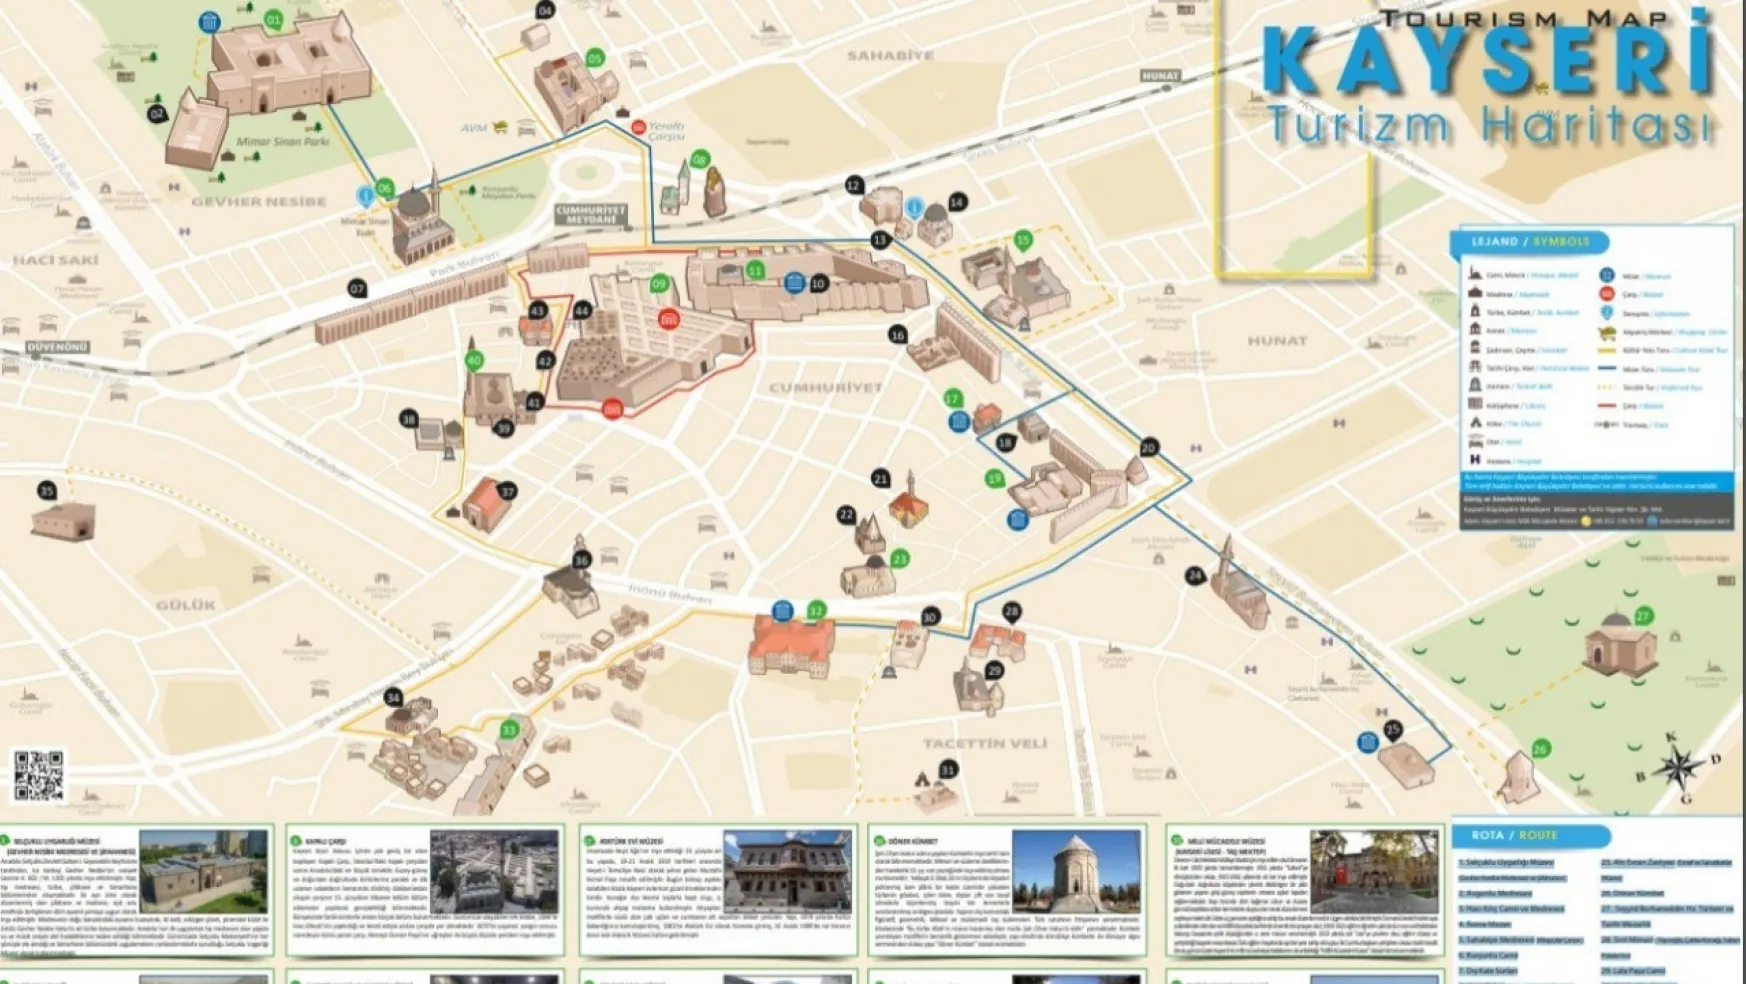 Kayseri'nin turizm haritası yenilendi